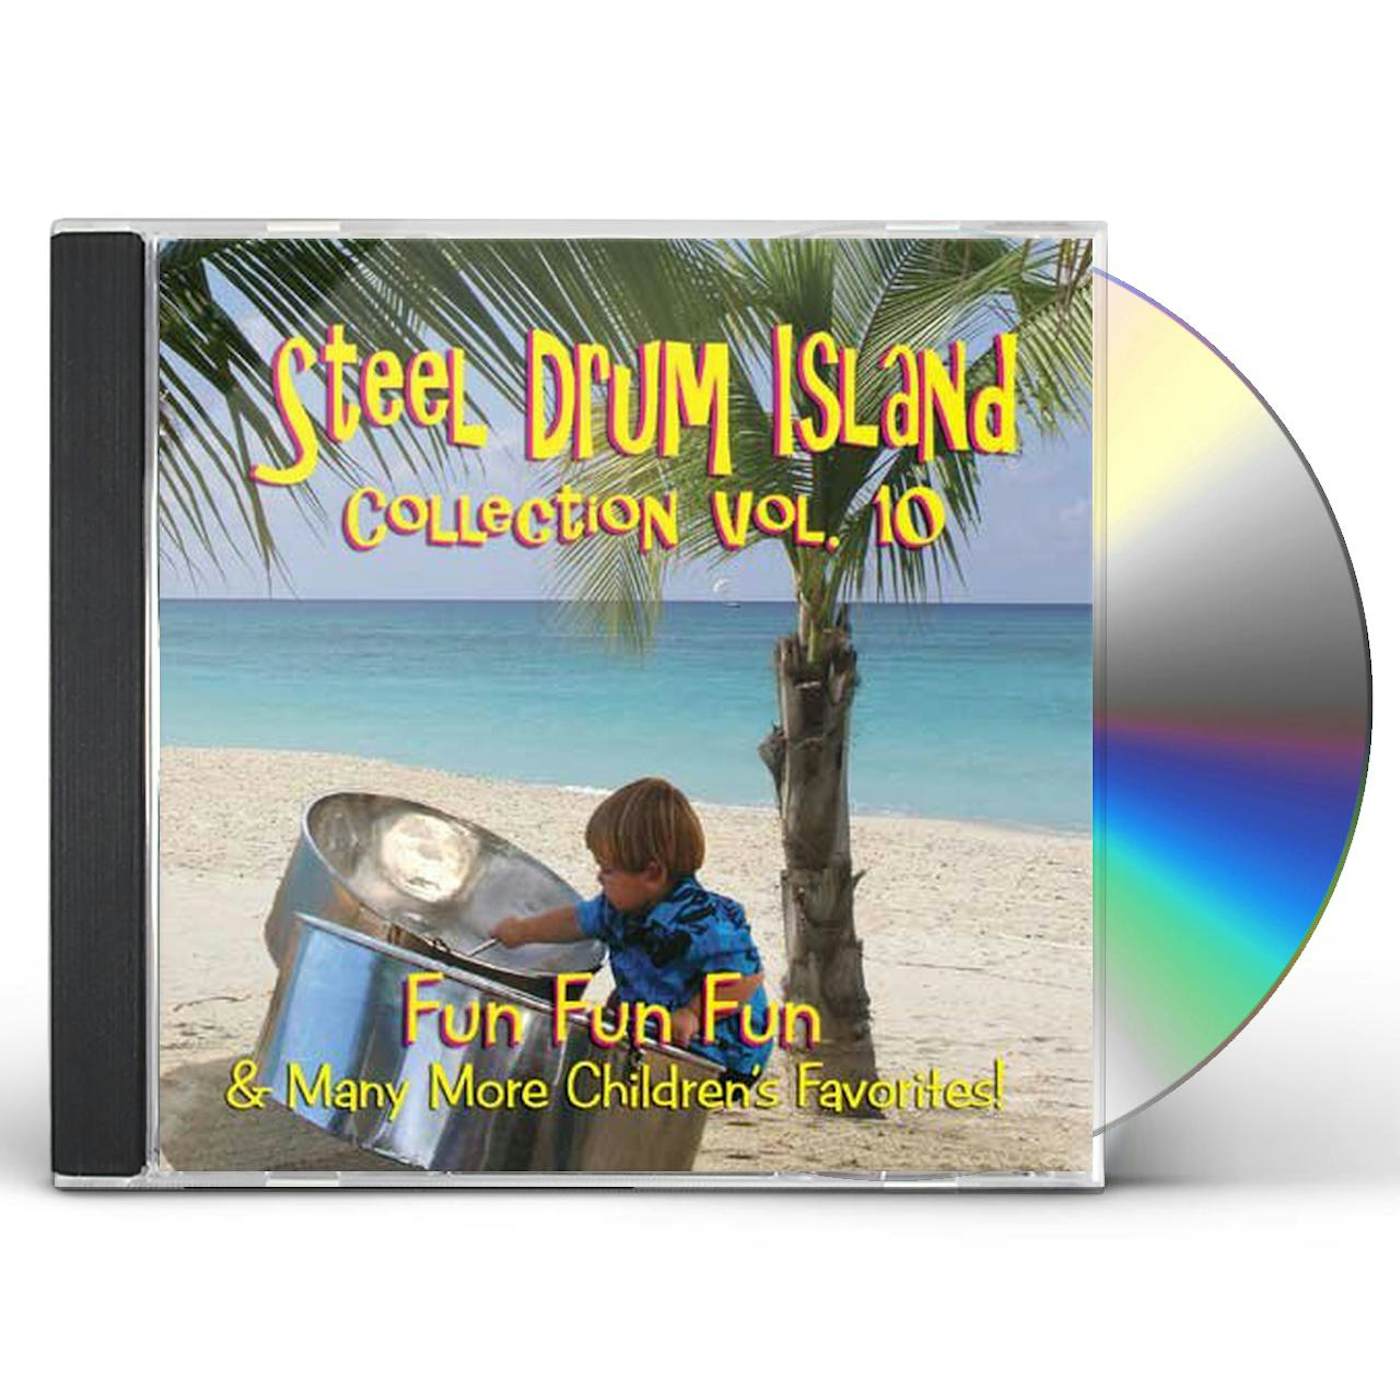 STEEL DRUM ISLAND COLLECTION: FUN FUN FUN & MORE O CD